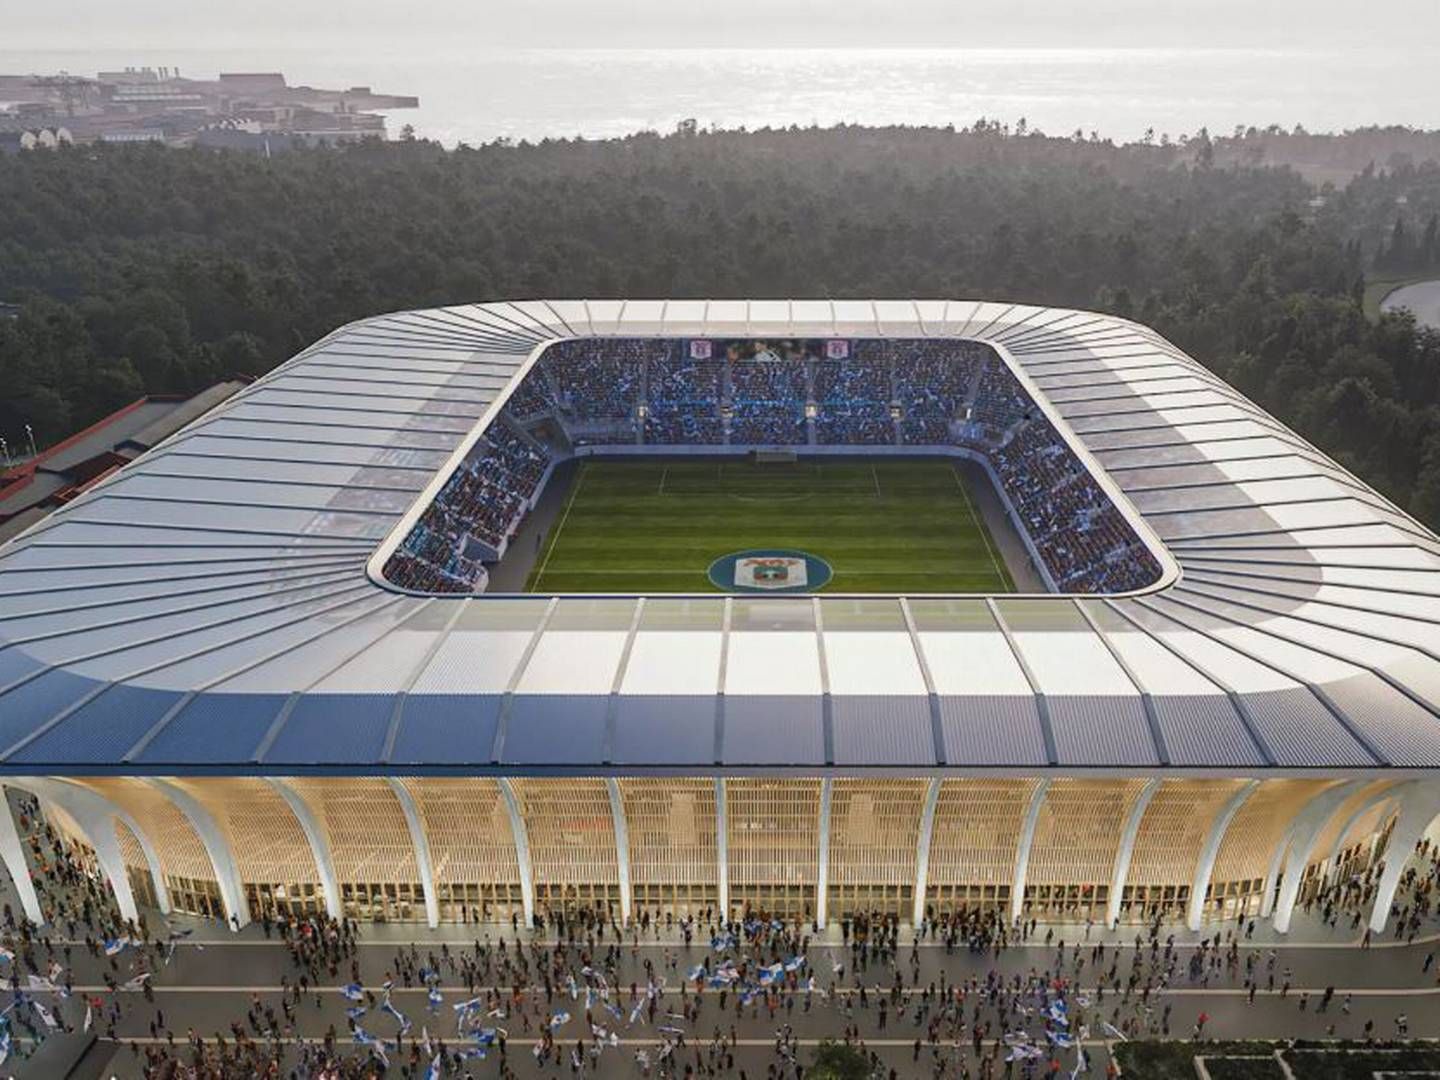 Budgettet for det nye stadionbyggeri i landets næststørste by er 650 mio. kr. | Foto: PR-visualisering